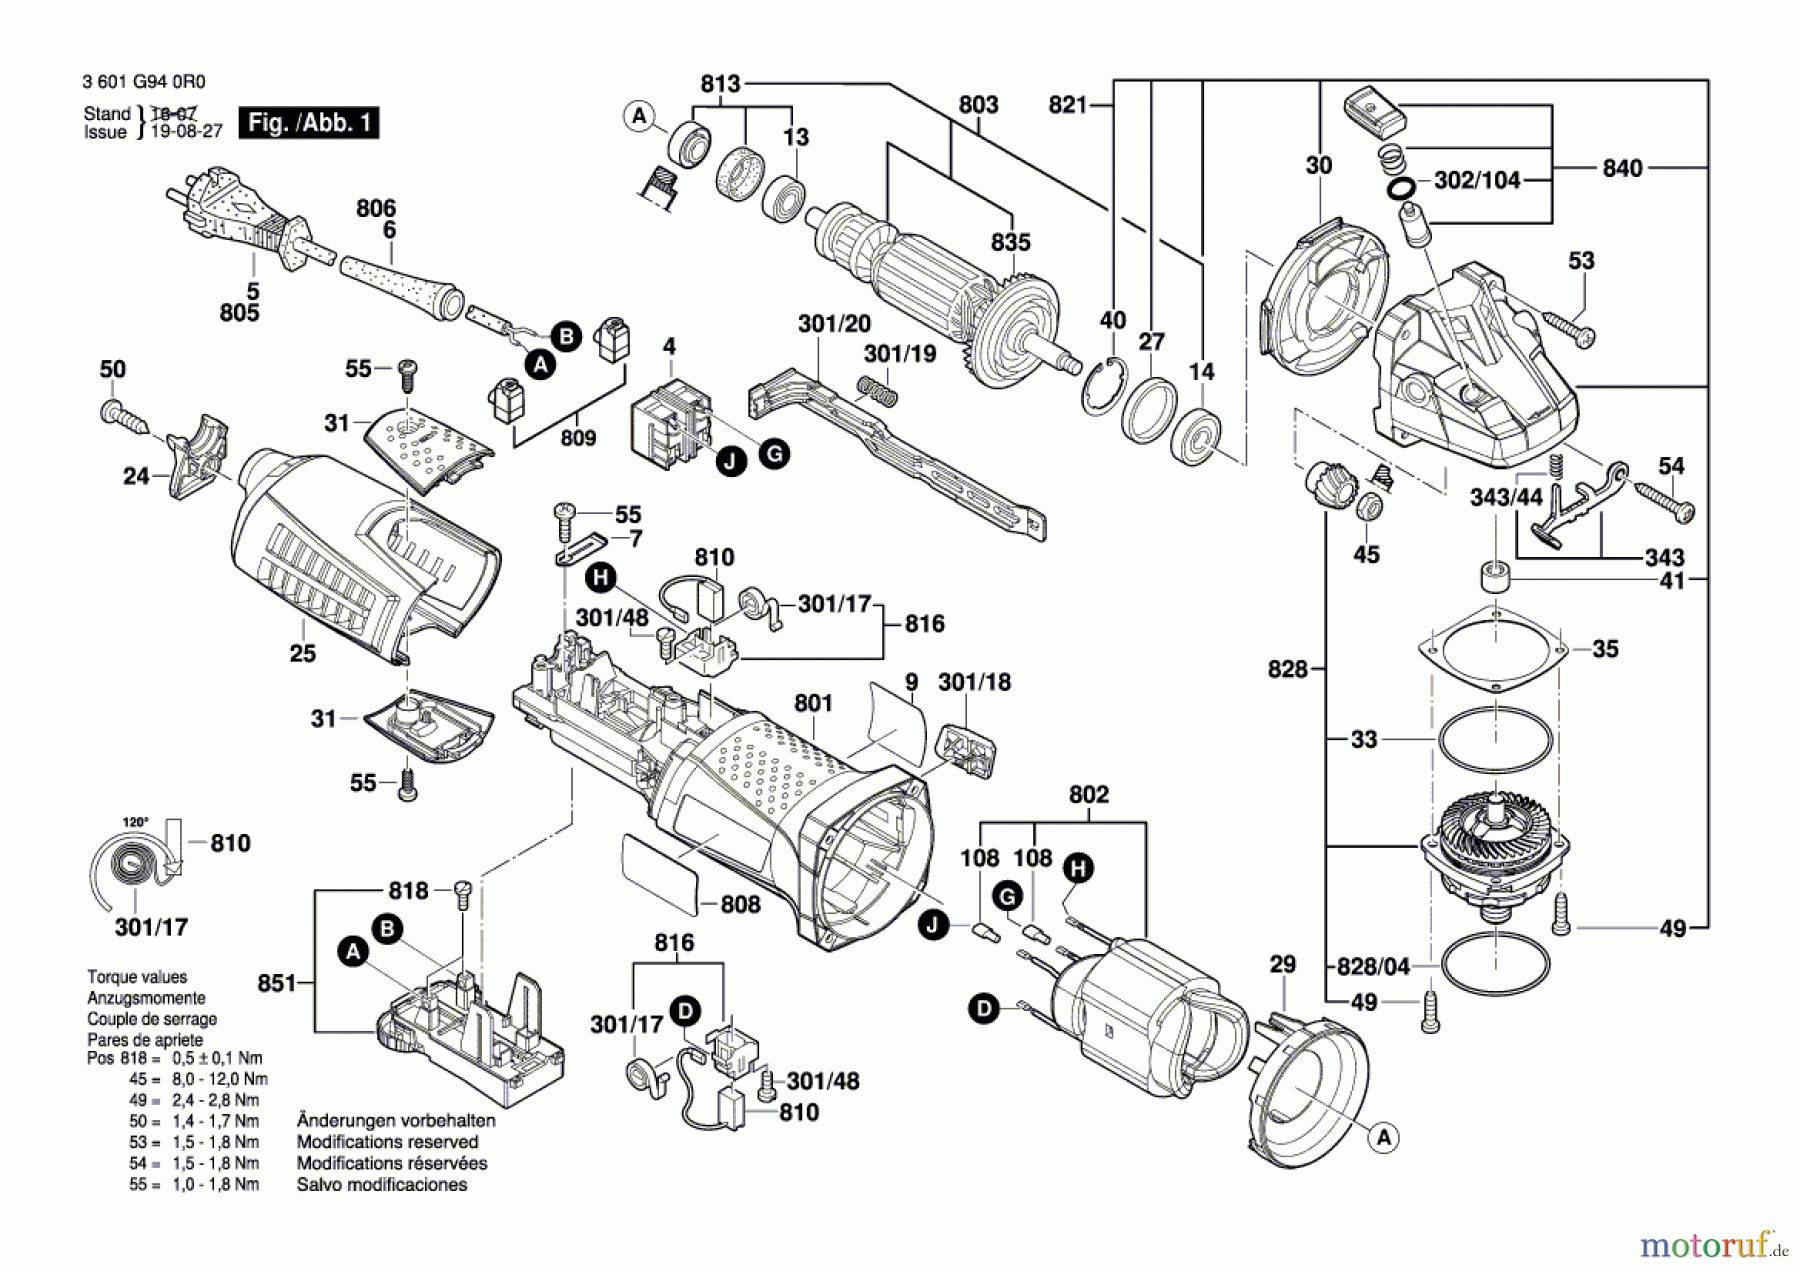  Bosch Werkzeug Winkelschleifer GWS 13-125 CIE Seite 1